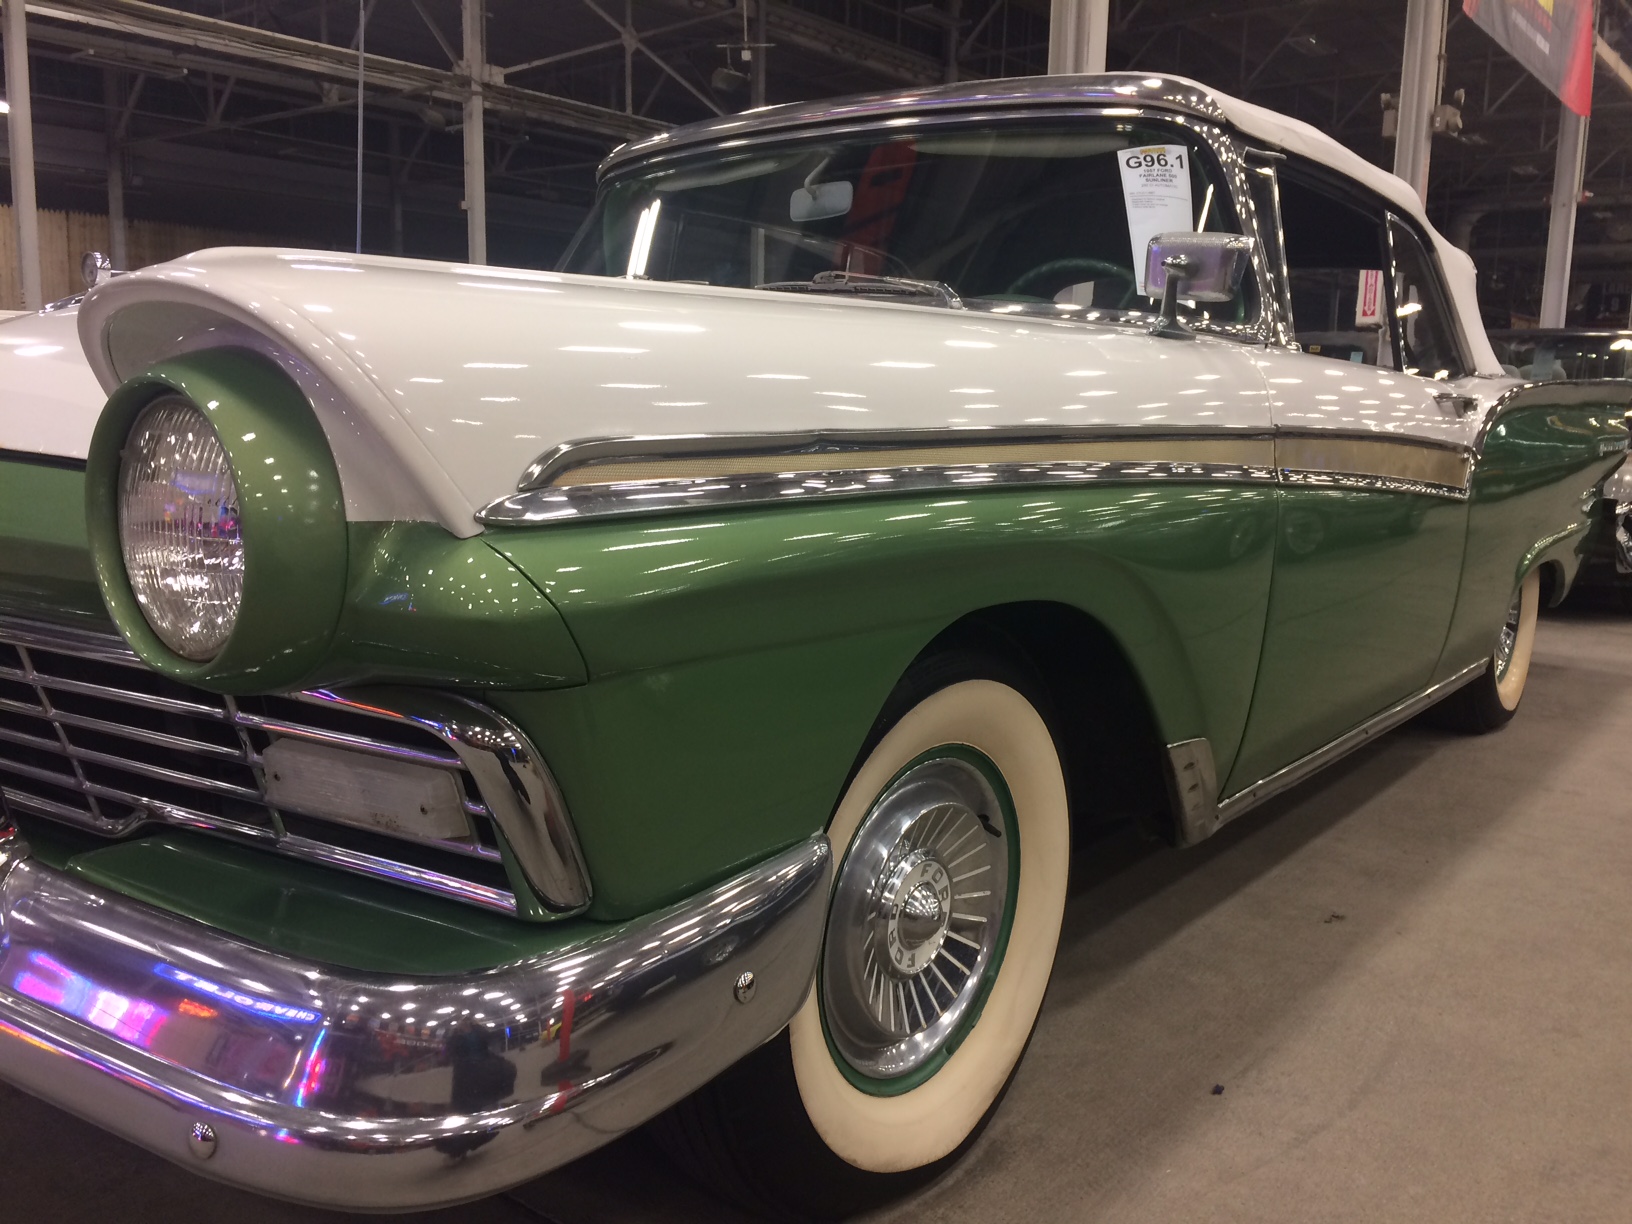 Mecum car auction kicks off at Indiana State Fairgrounds Indianapolis